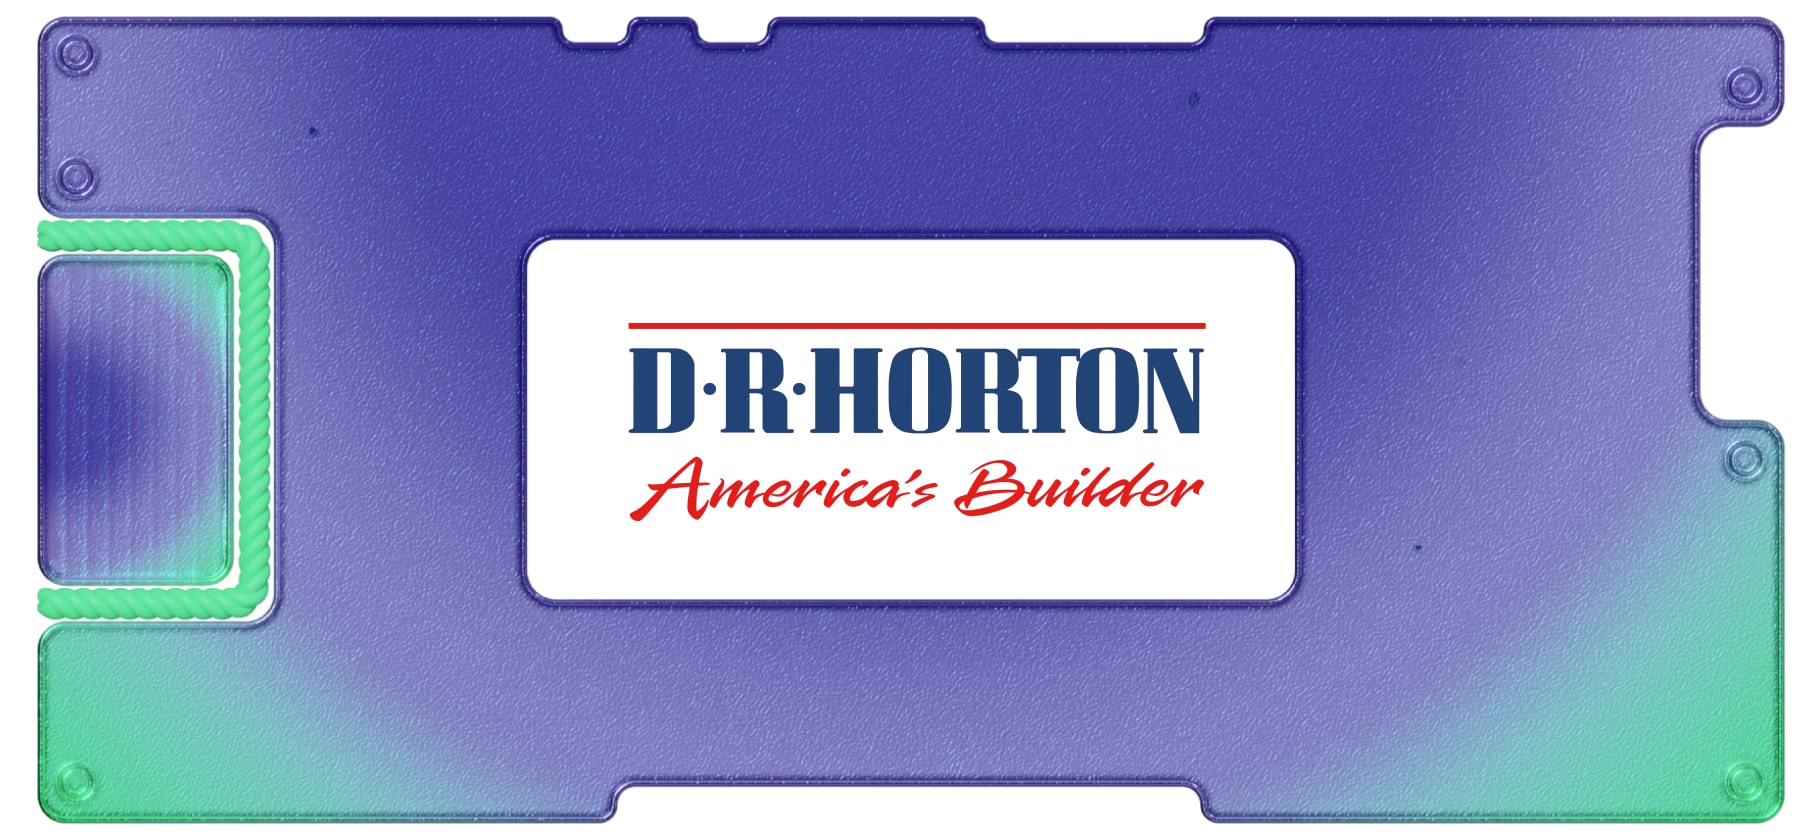 Обзор DR Horton: как себя чувствуют американские строительные компании